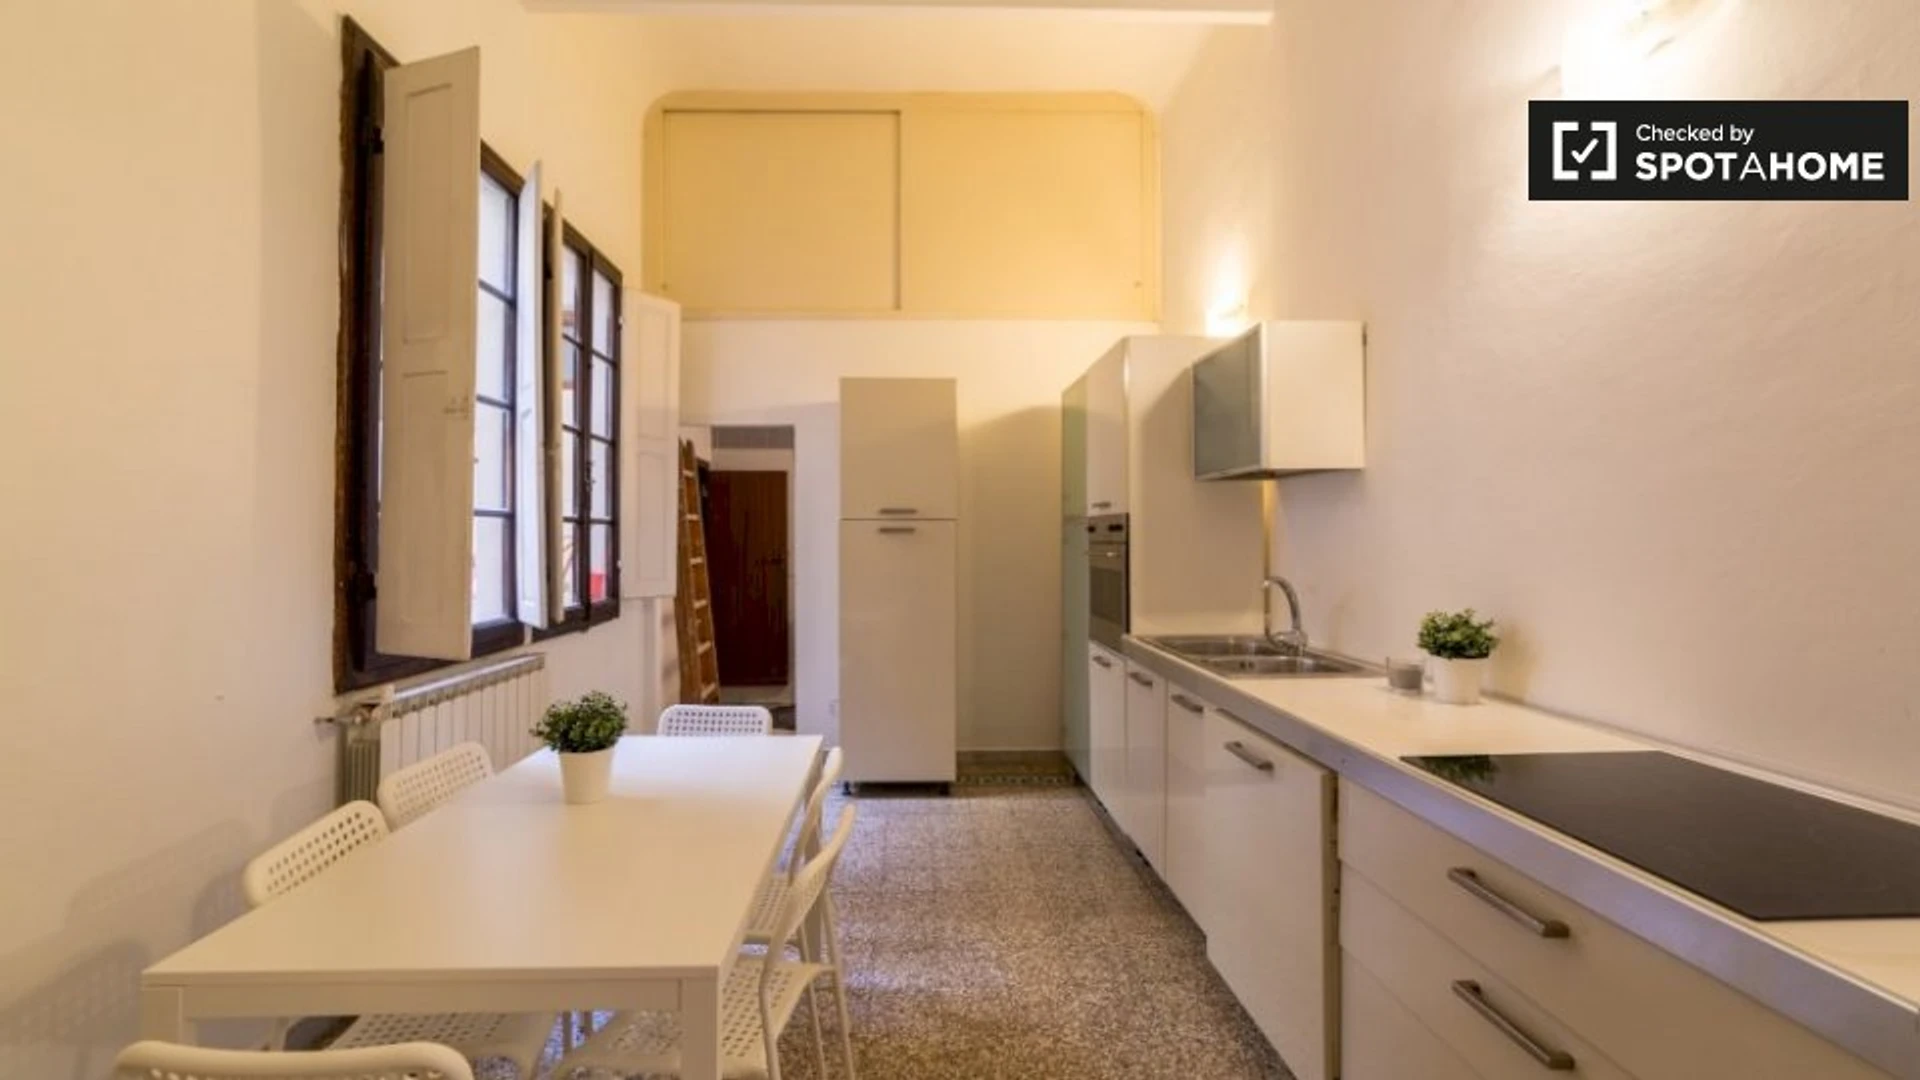 Firenze de çift kişilik yataklı kiralık oda